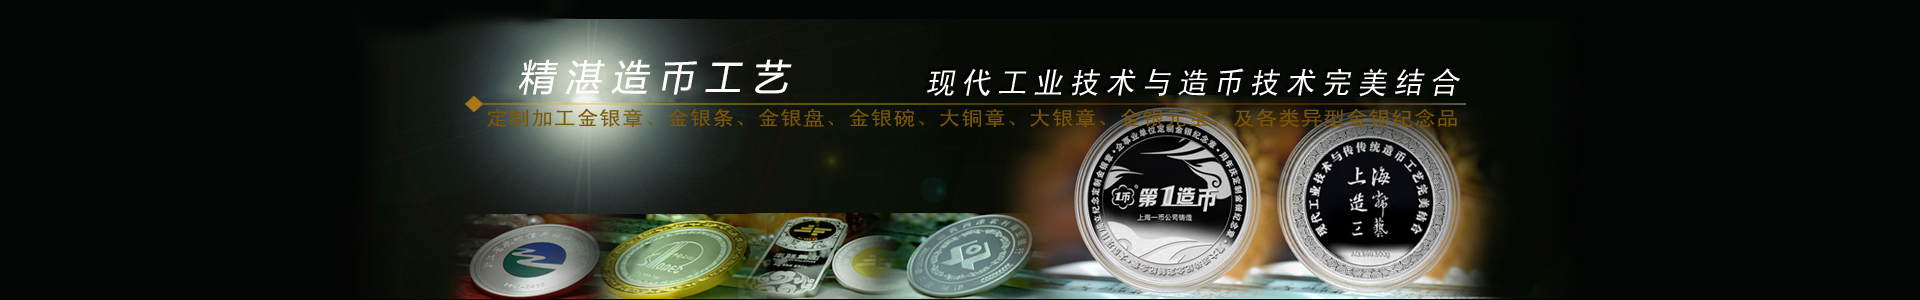 定做纯银纪念币价格_纪念币价格表_上海造币厂